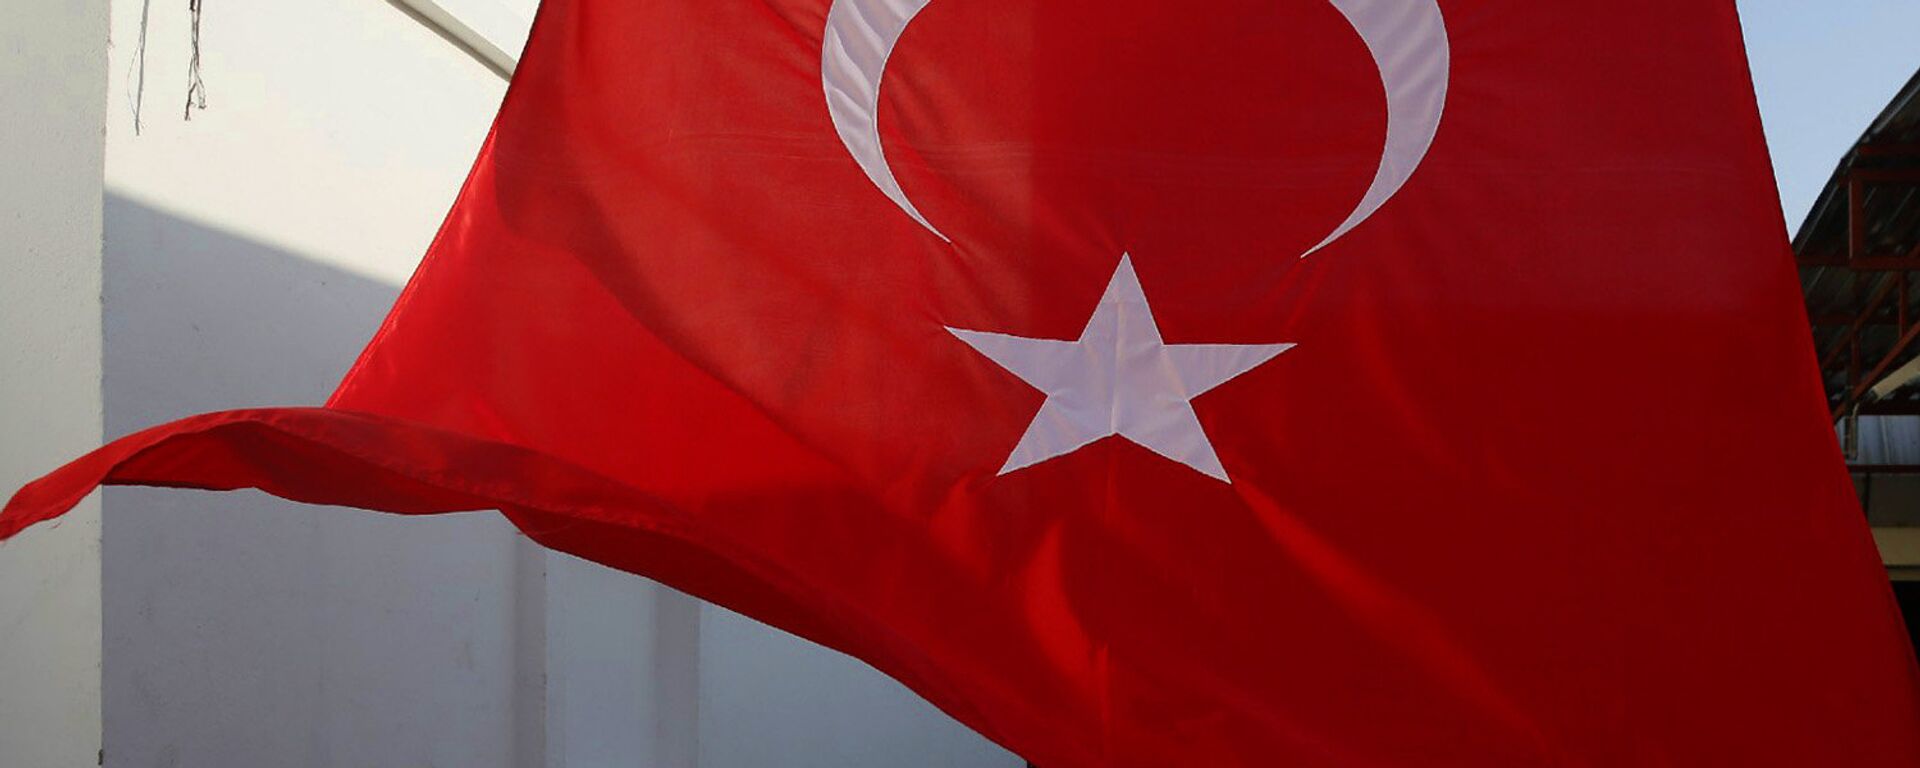 Турецкий флаг - Sputnik Грузия, 1920, 04.06.2021